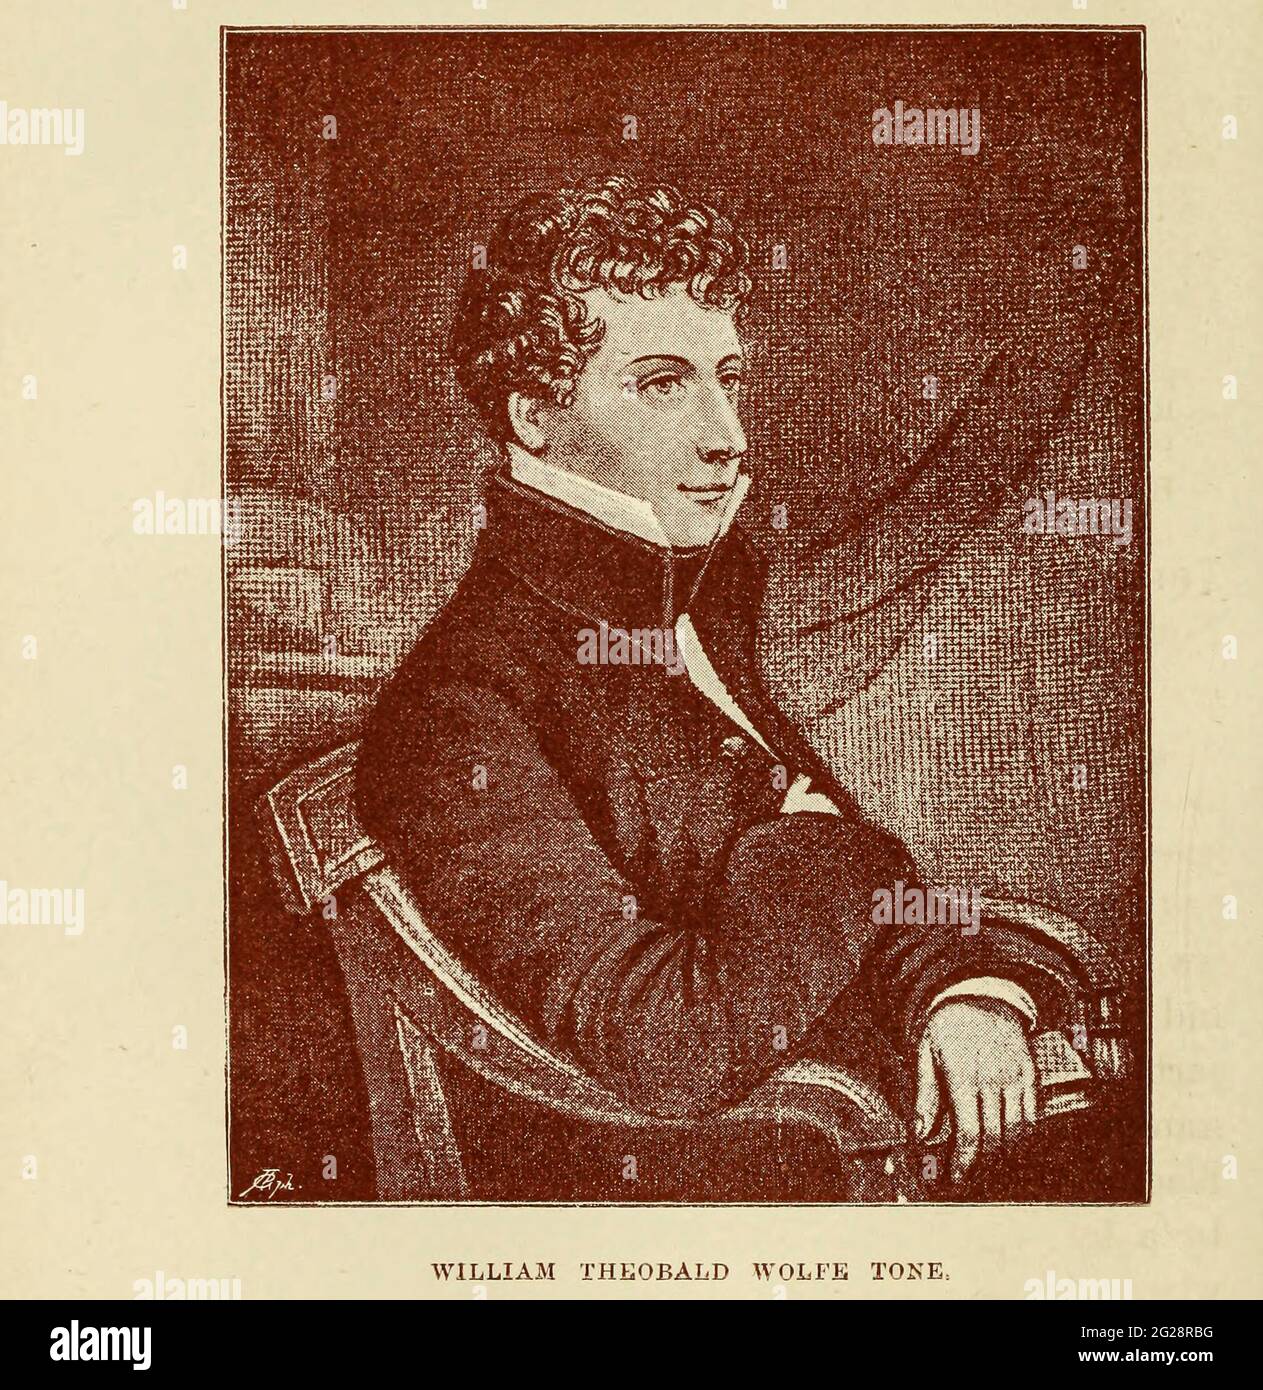 William Theobald Wolfe Tone, posthum bekannt als Wolfe Tone (20. Juni 1763 – 19. November 1798), war eine führende irische revolutionäre Figur und eines der Gründungsmitglieder der Vereinigten Iren, einer republikanischen Gesellschaft, die sich gegen die britische Herrschaft in Irland auflehnte, Wo er ein Führer war, der 1798 in die irische Rebellion ging. Er wurde am 3. November 1798 in Lough Swilly, in der Nähe von Buncrana, County Donegal, festgenommen und am 19. November durch Erhängen zum Tode verurteilt. Sieben Tage später starb er unter unklaren Umständen. Seitdem wurde von den meisten irischen Gelehrten theoretisiert und vereinbart, dass er sich selbsttätig verpflichtete Stockfoto